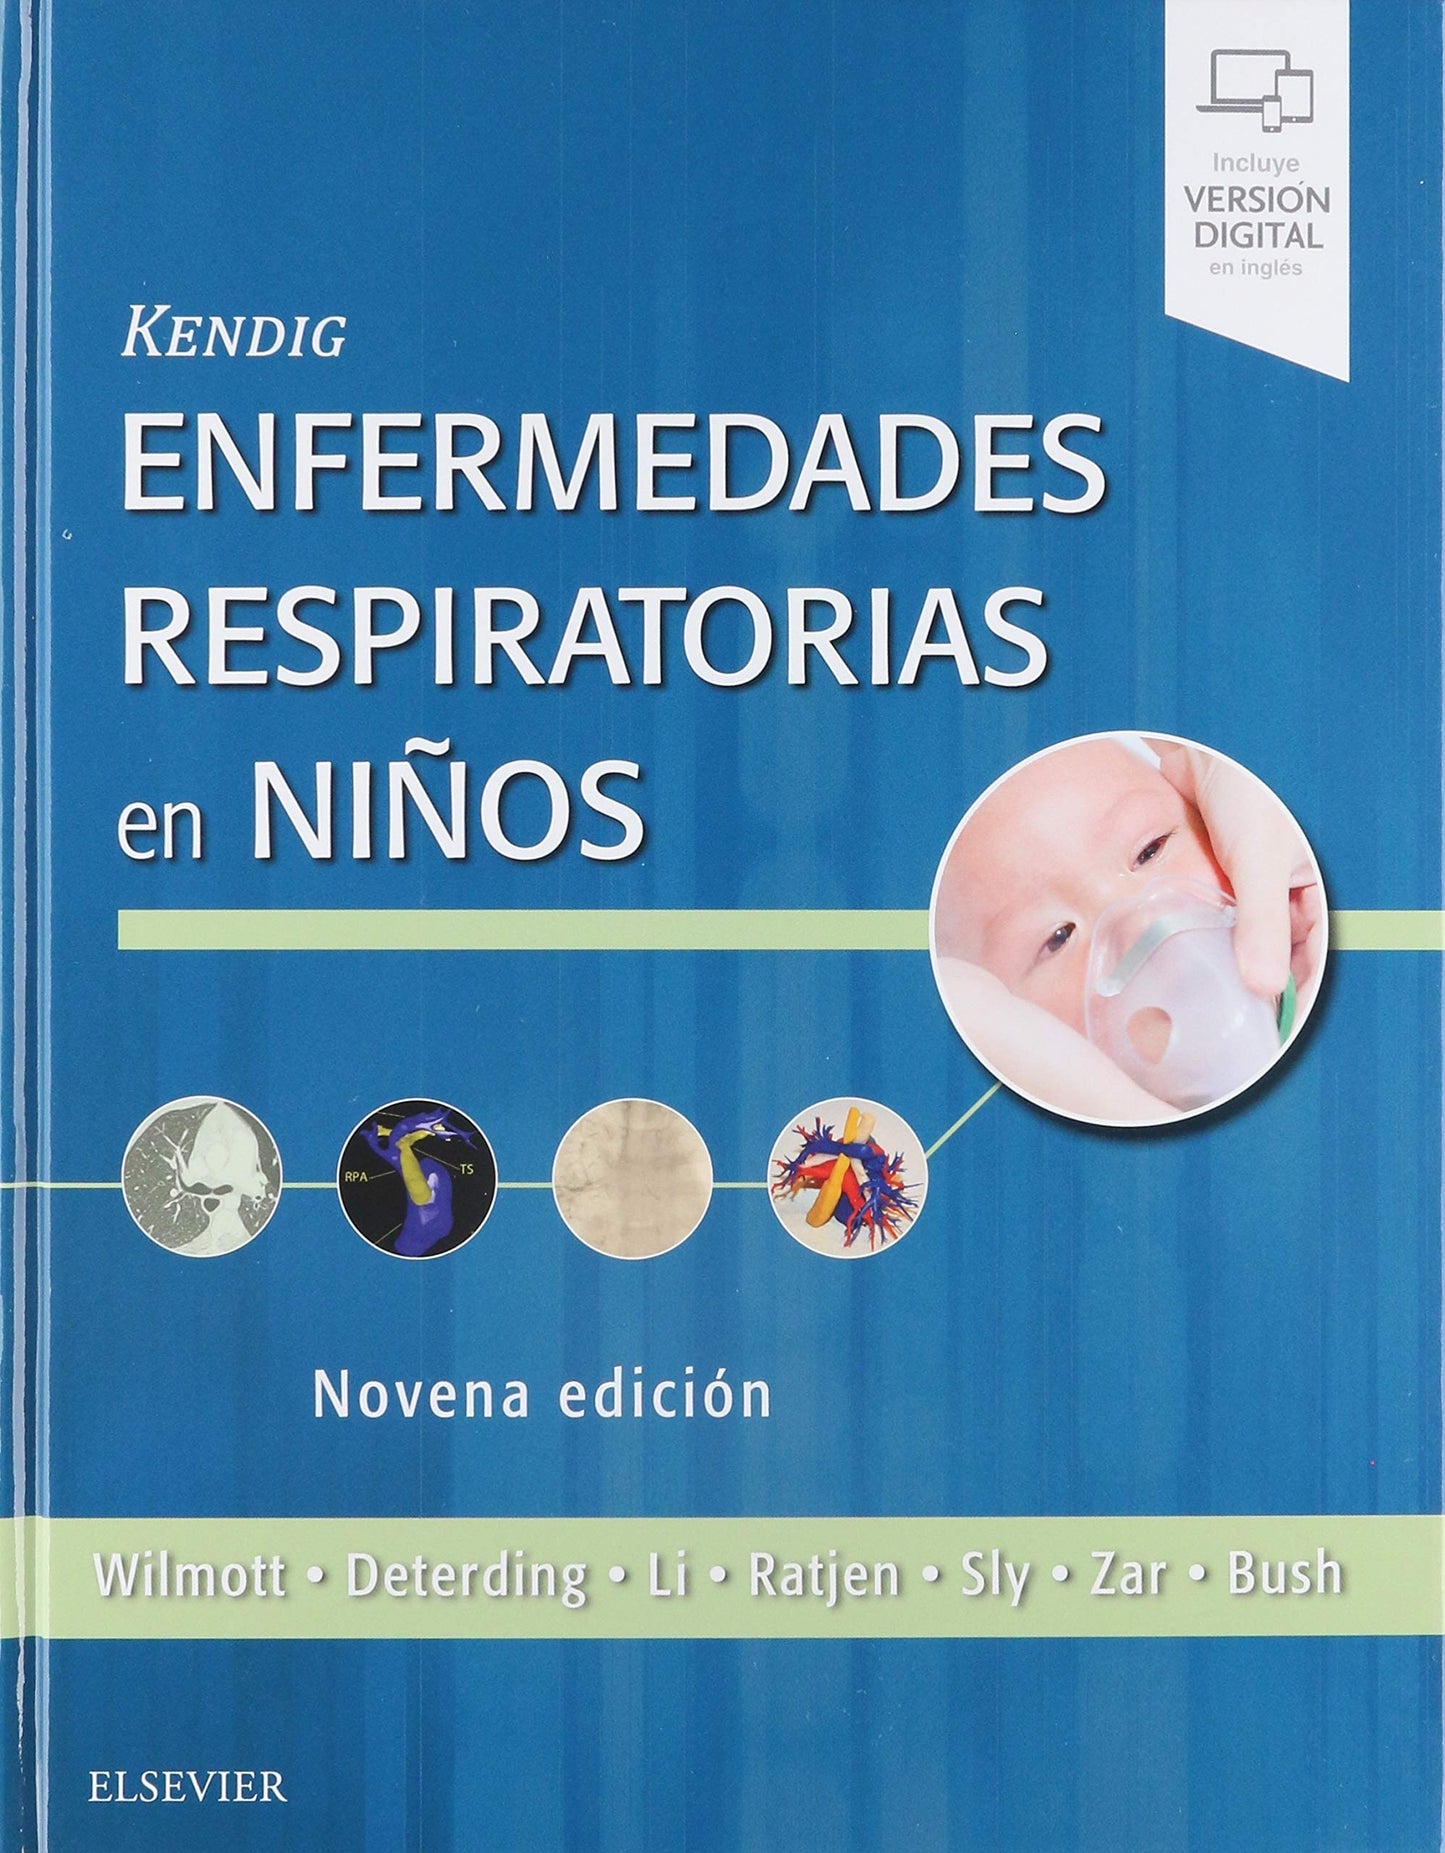 Kendig Enfermedades Respiratorias en Niños